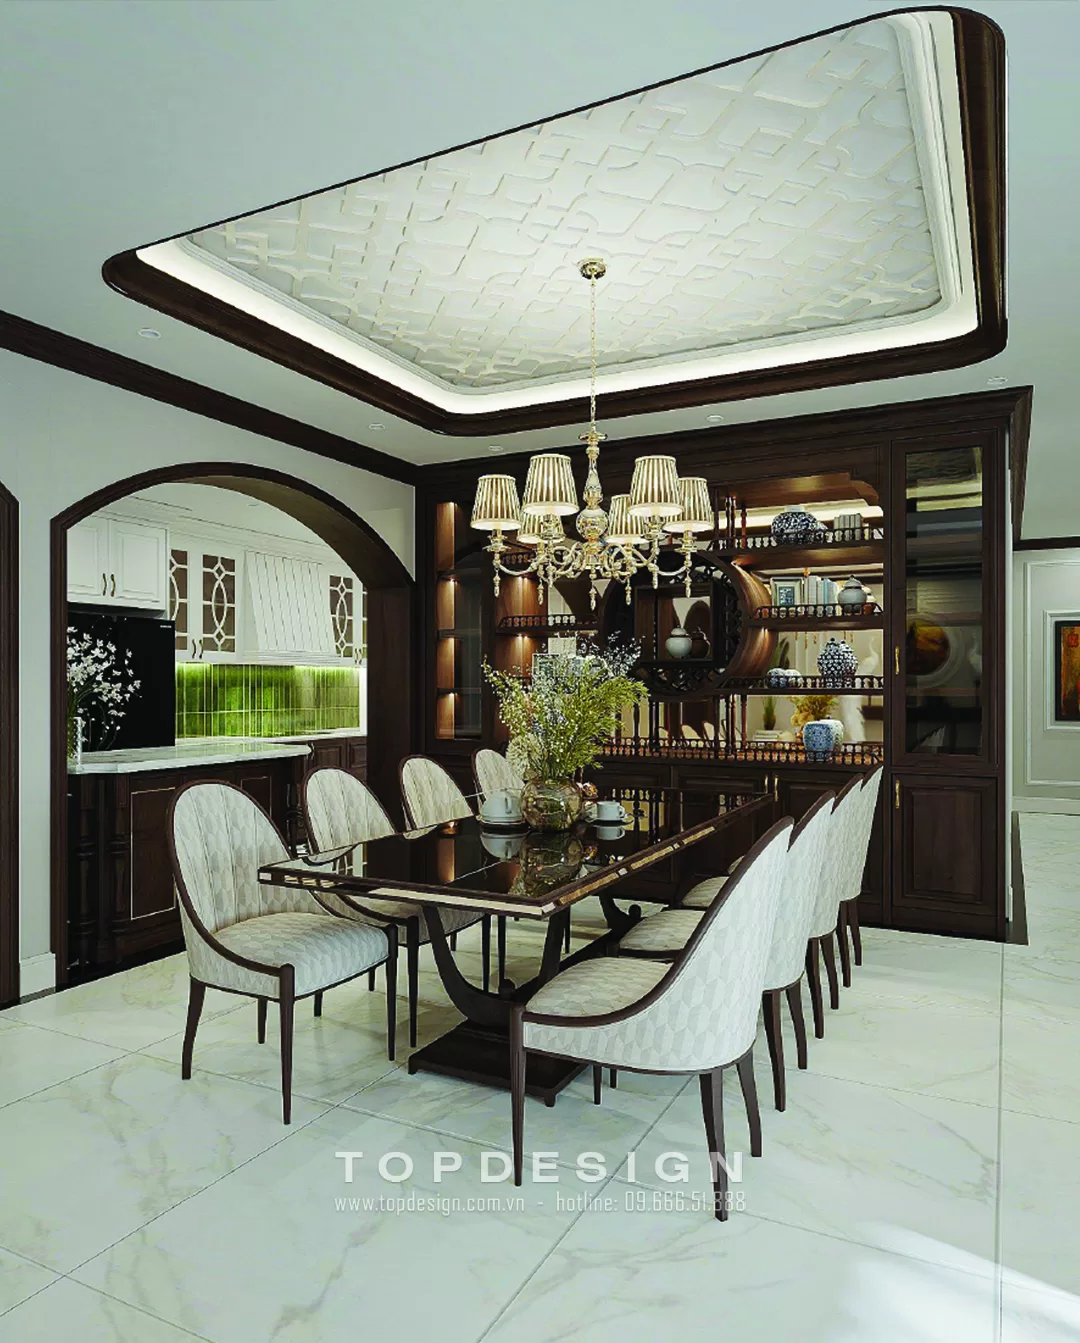 9. Mẫu phòng ăn biệt thự- Topdesign